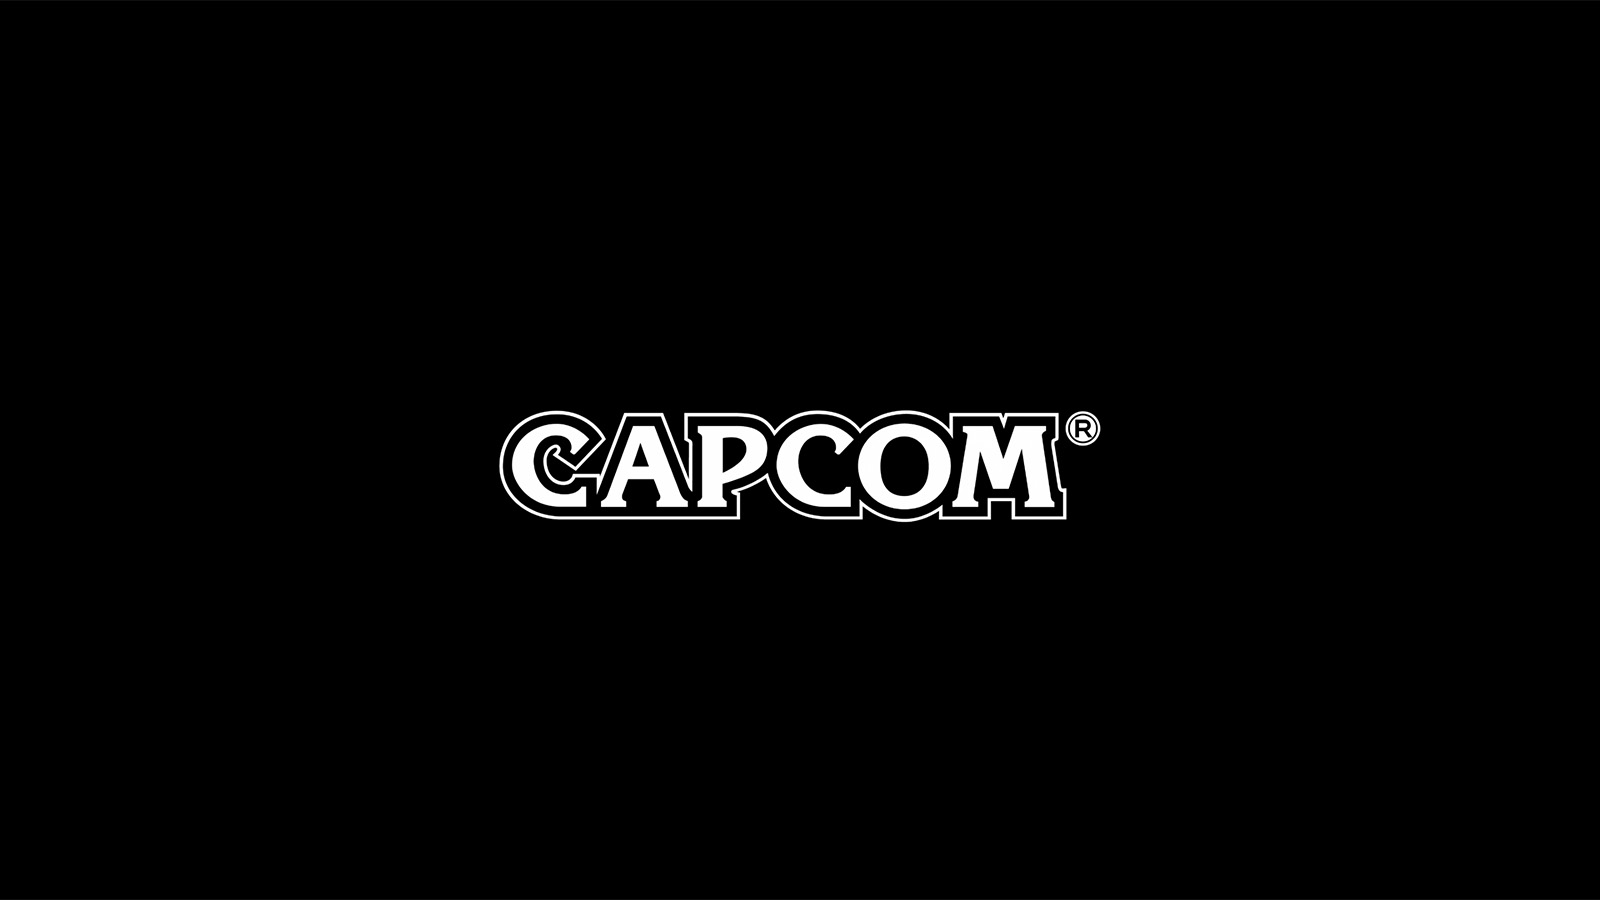 Capcom Announces New Digital Showcase For June 12th